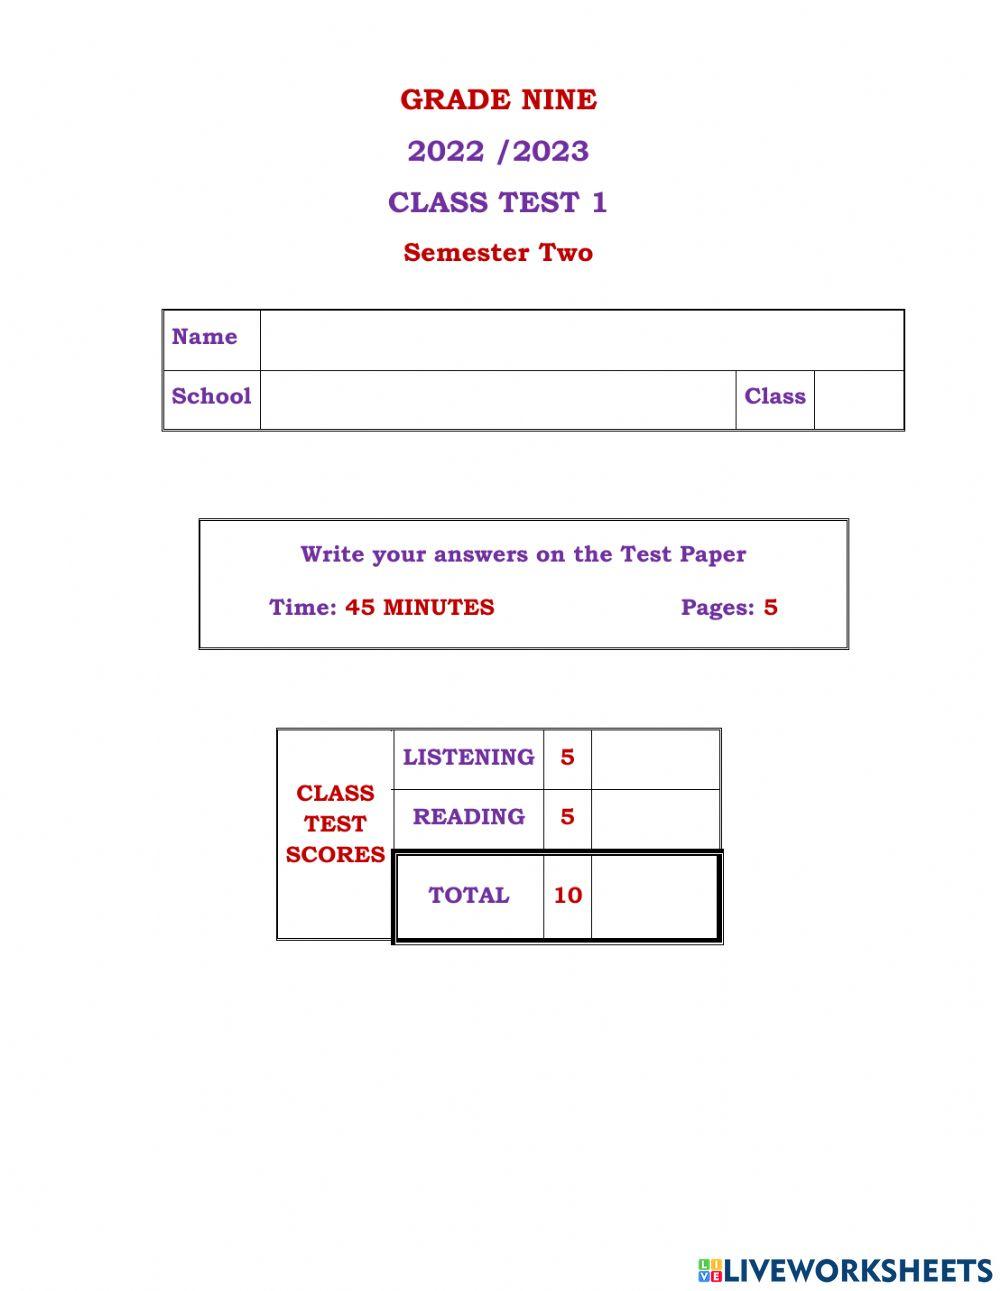 Grade 9 Class Test 1 S 2